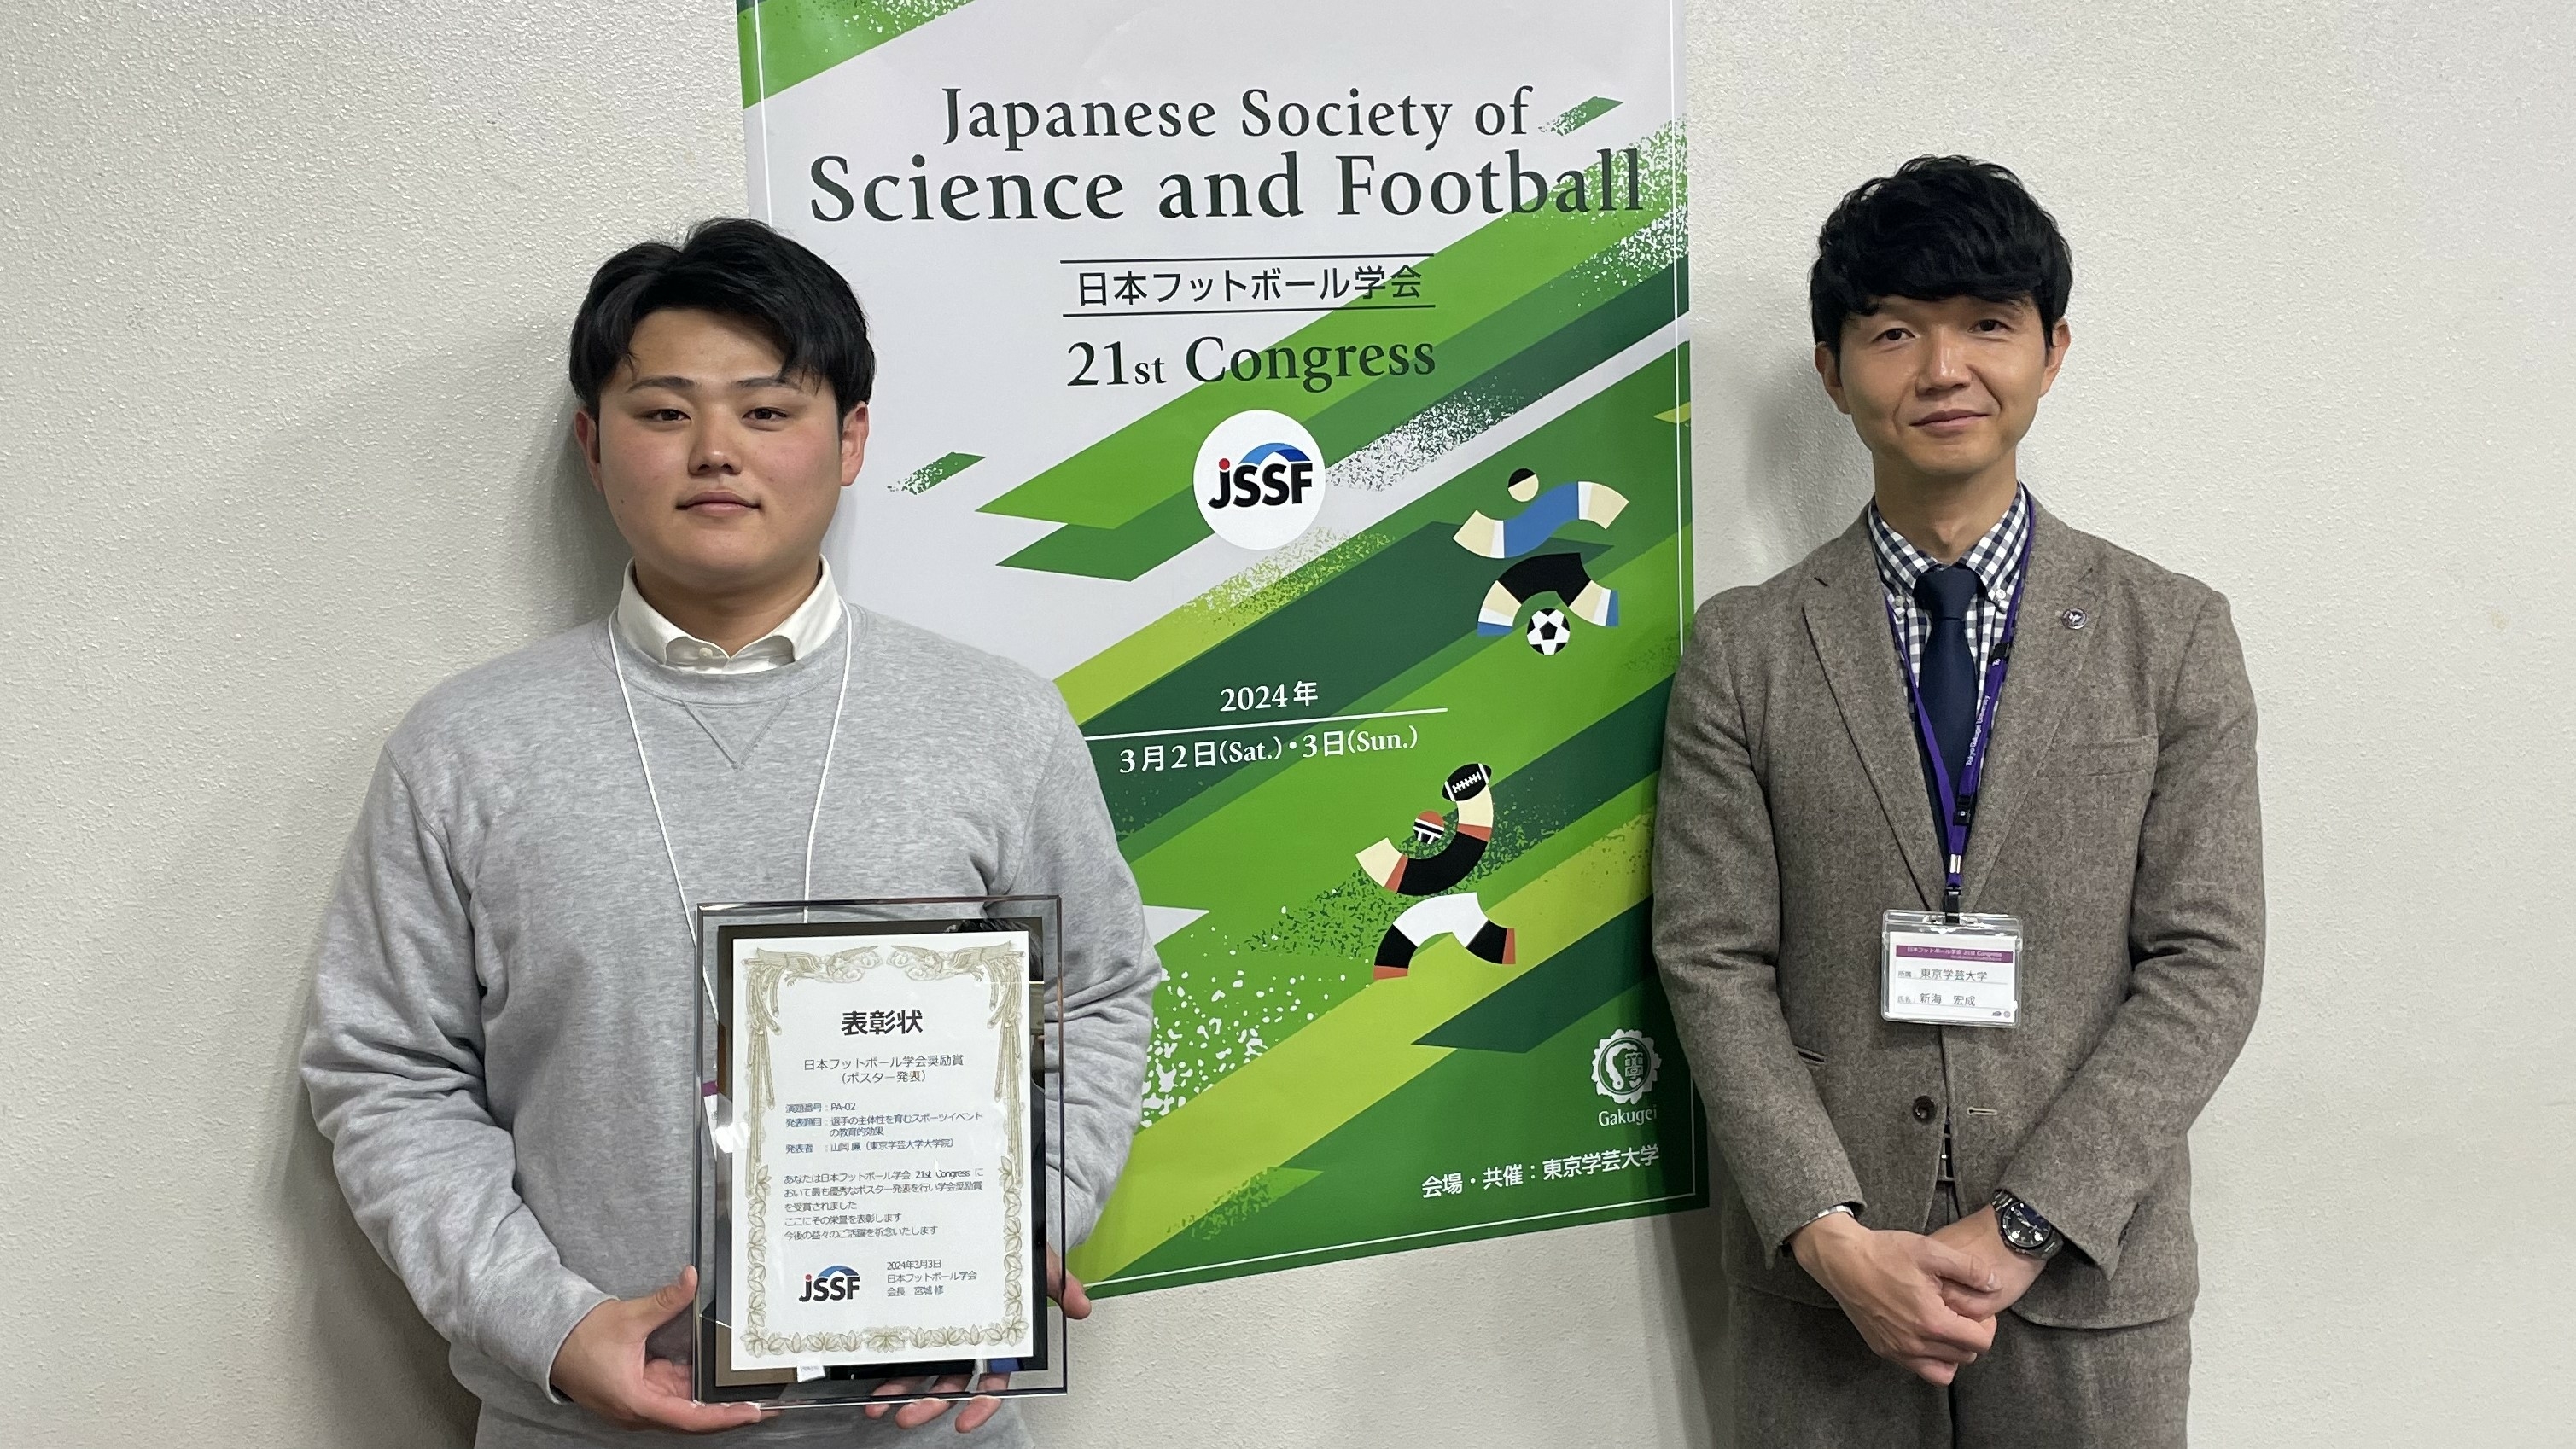 山岡廉さん（修士課程教育AI研究プログラム所属）が日本フットボール学会21st Congressにて学会大会奨励賞を受賞しました